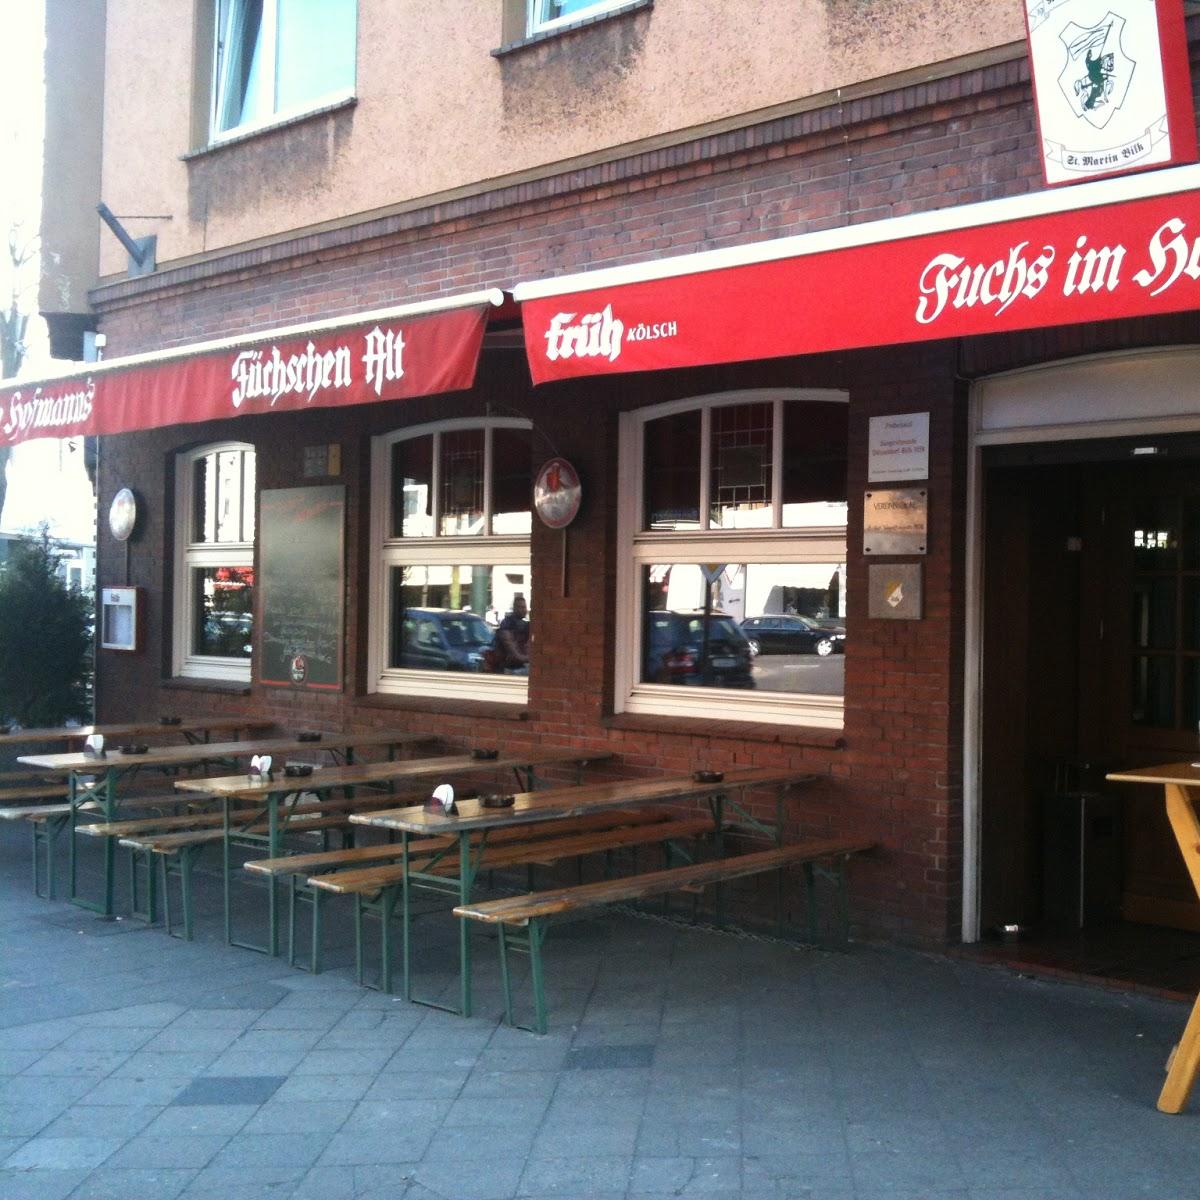 Restaurant "Fuchs im Hofmann‘s" in Düsseldorf